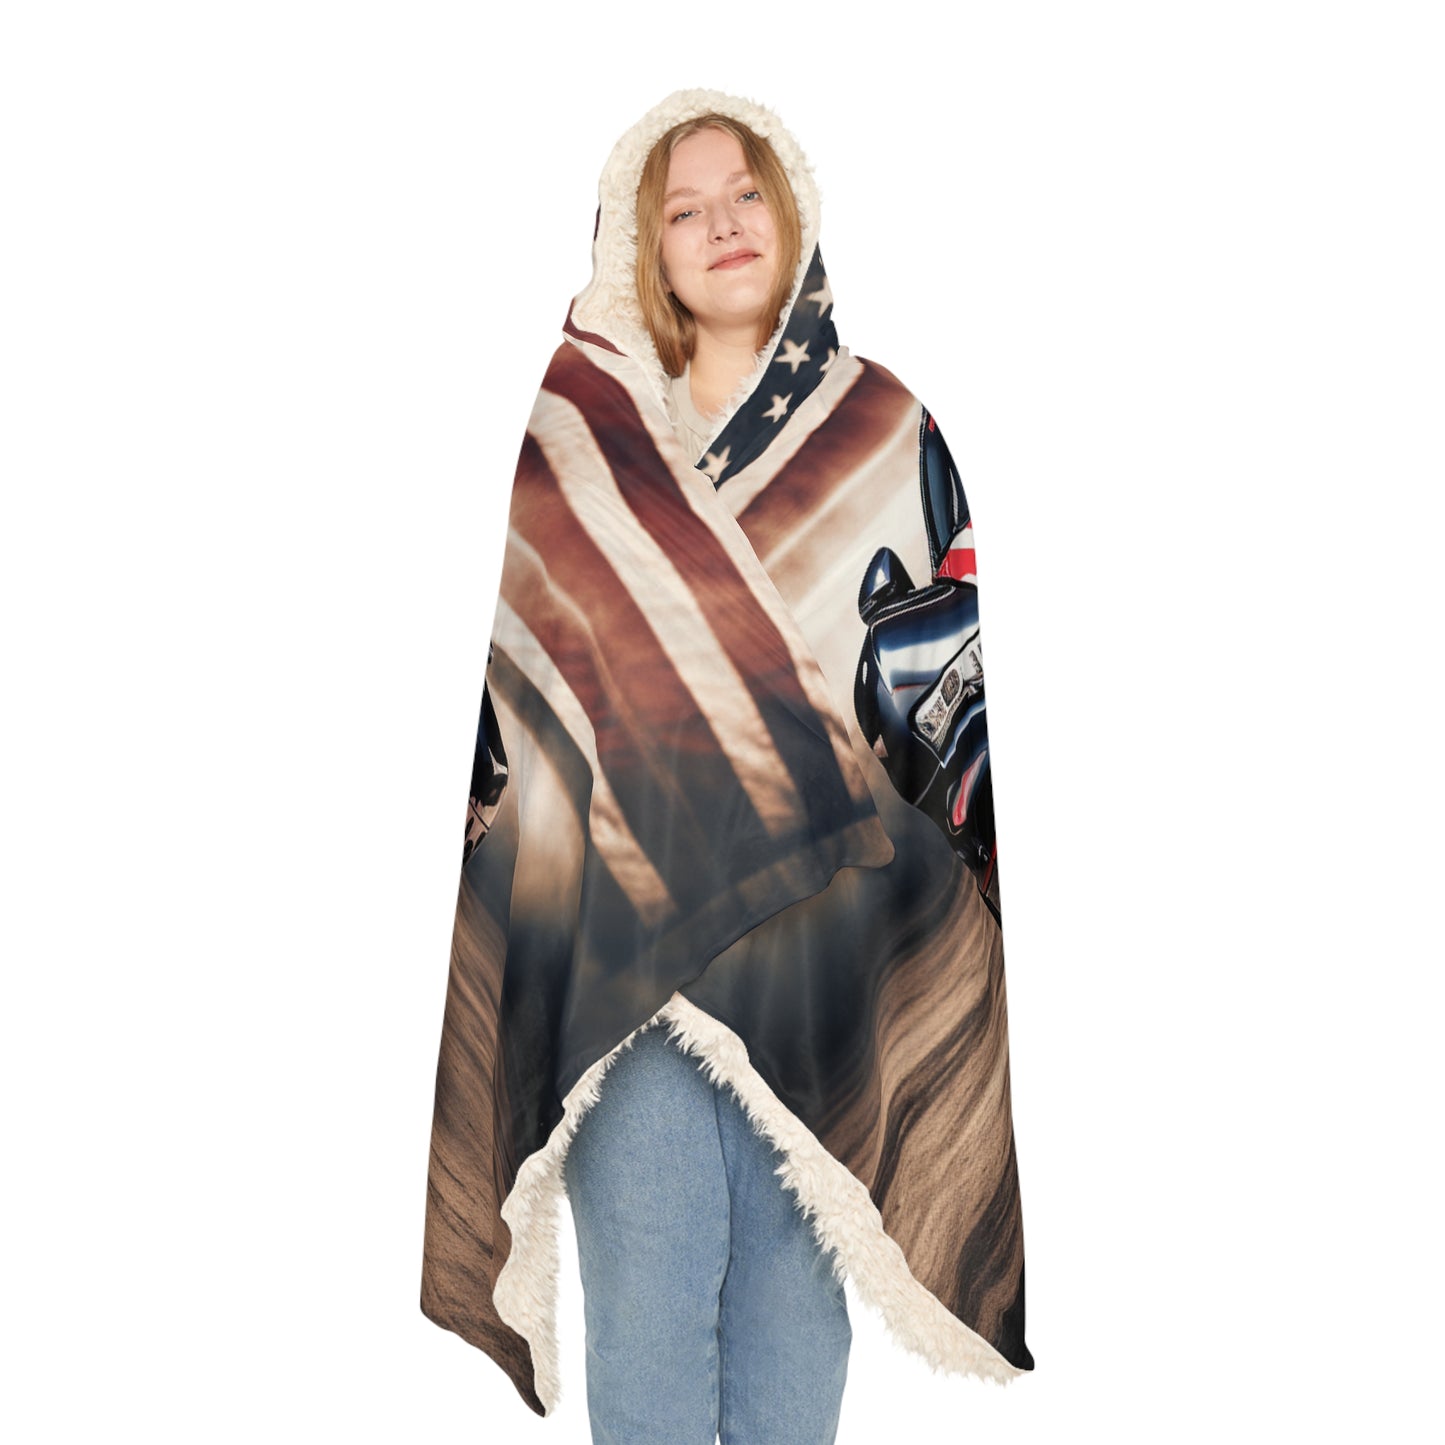 Snuggle Hooded Blanket Bugatti American Flag 2